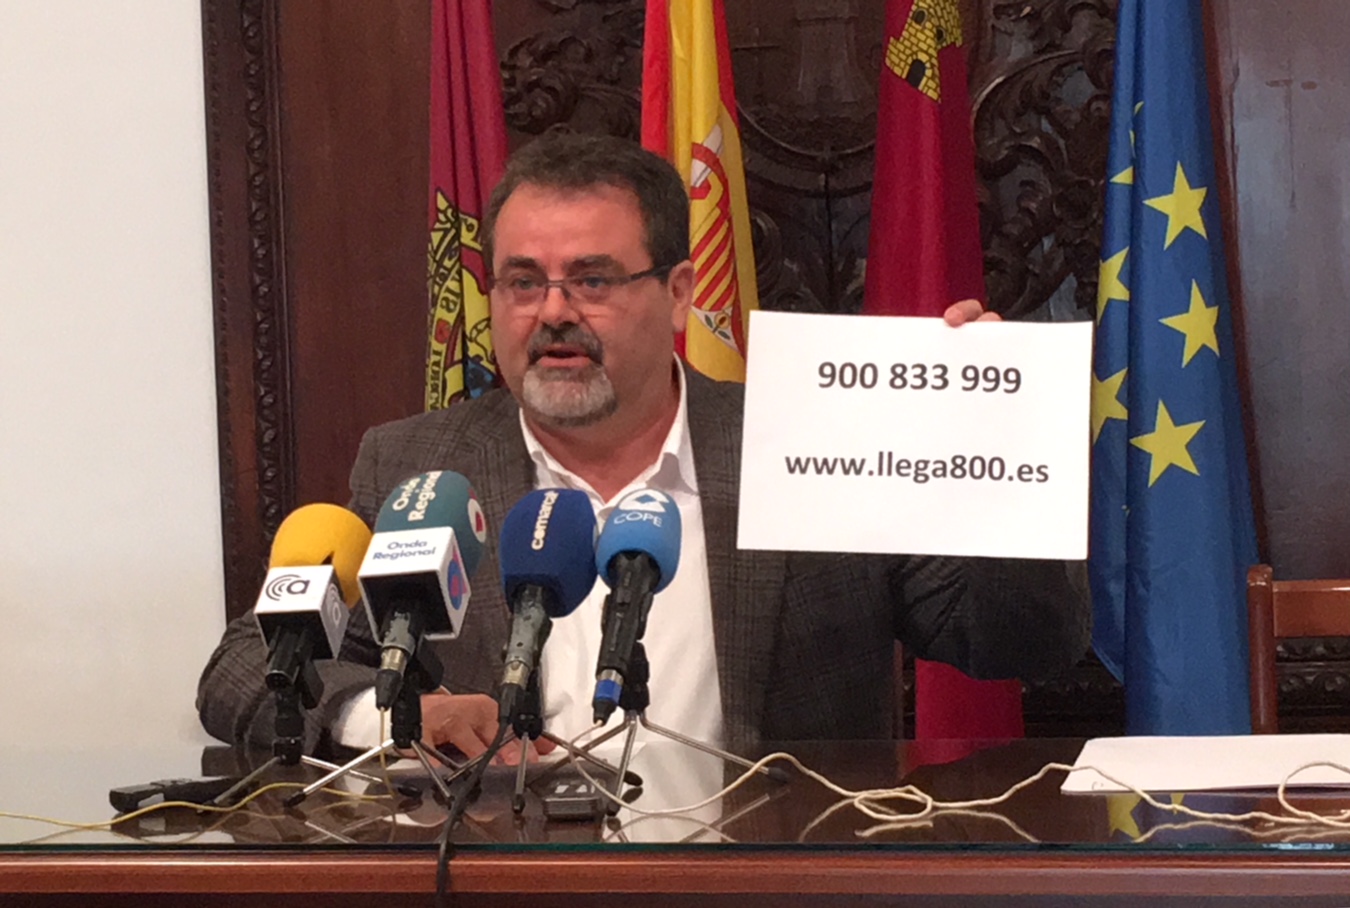 El PSOE informa a los usuarios de televisión que las “interferencias” por el 4G se solucionan de forma gratuita llamando al 900 833 999